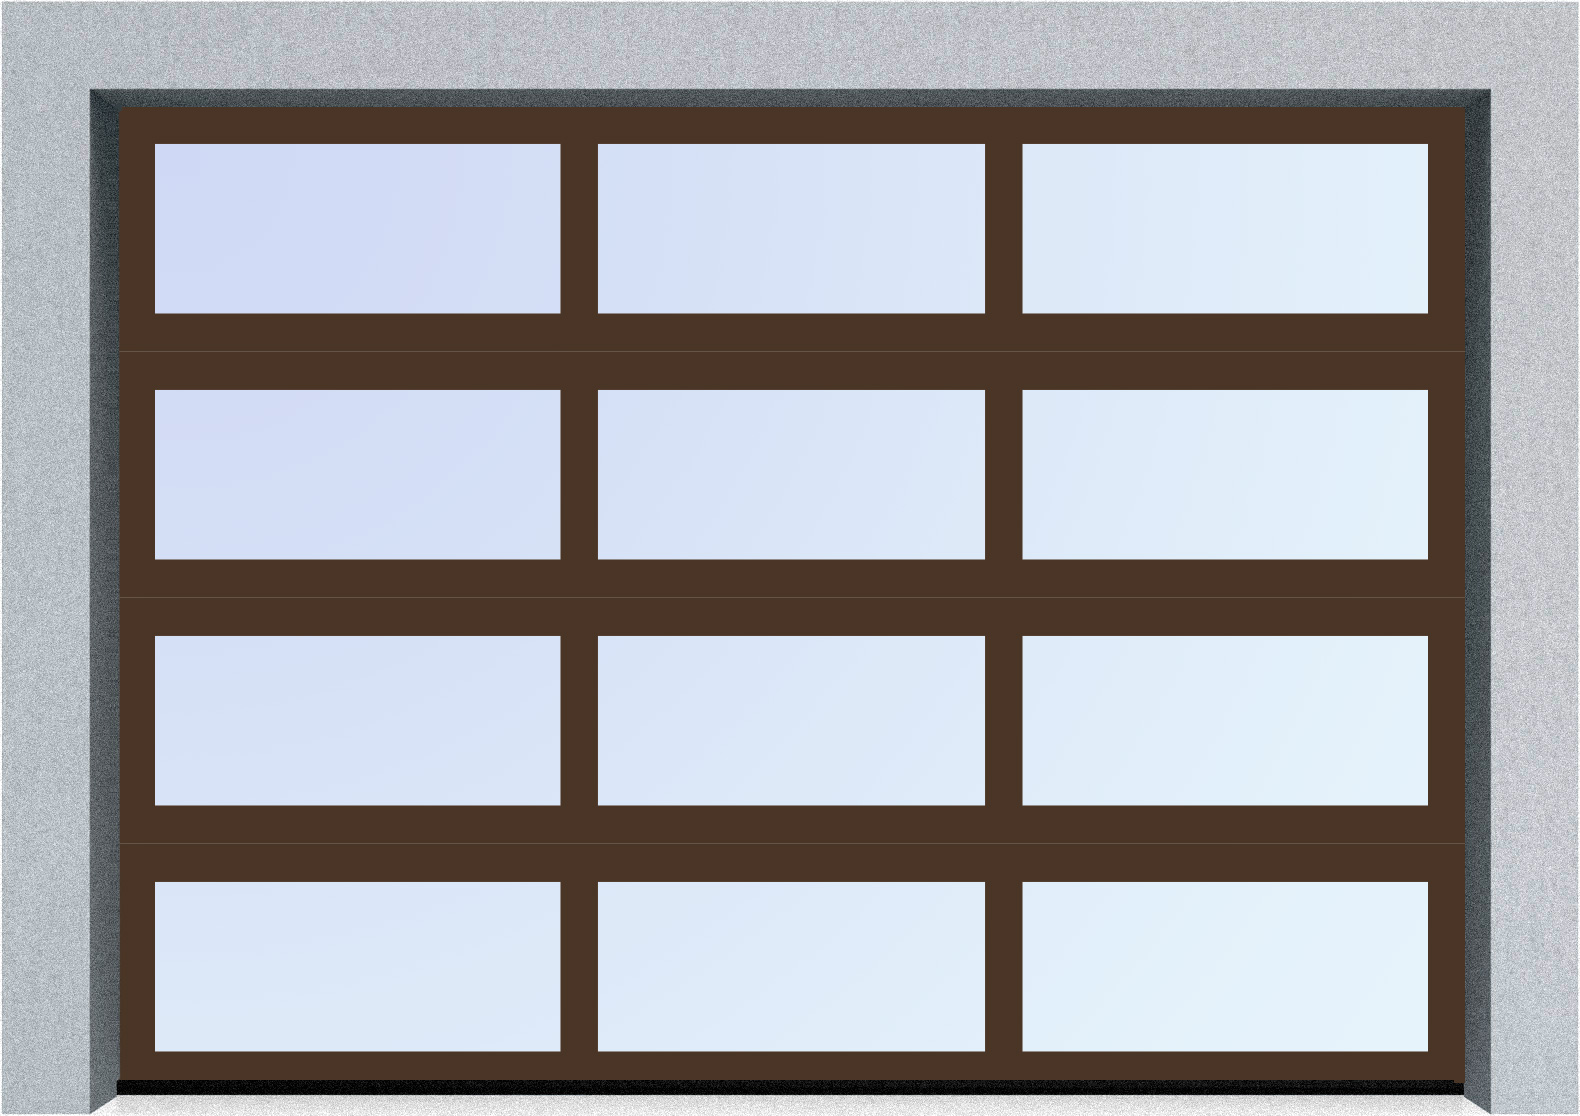  Секционные панорамные ворота серии AluTrend (АЛП) 2875х2125 нижняя панель стандартные цвета, фото 6 